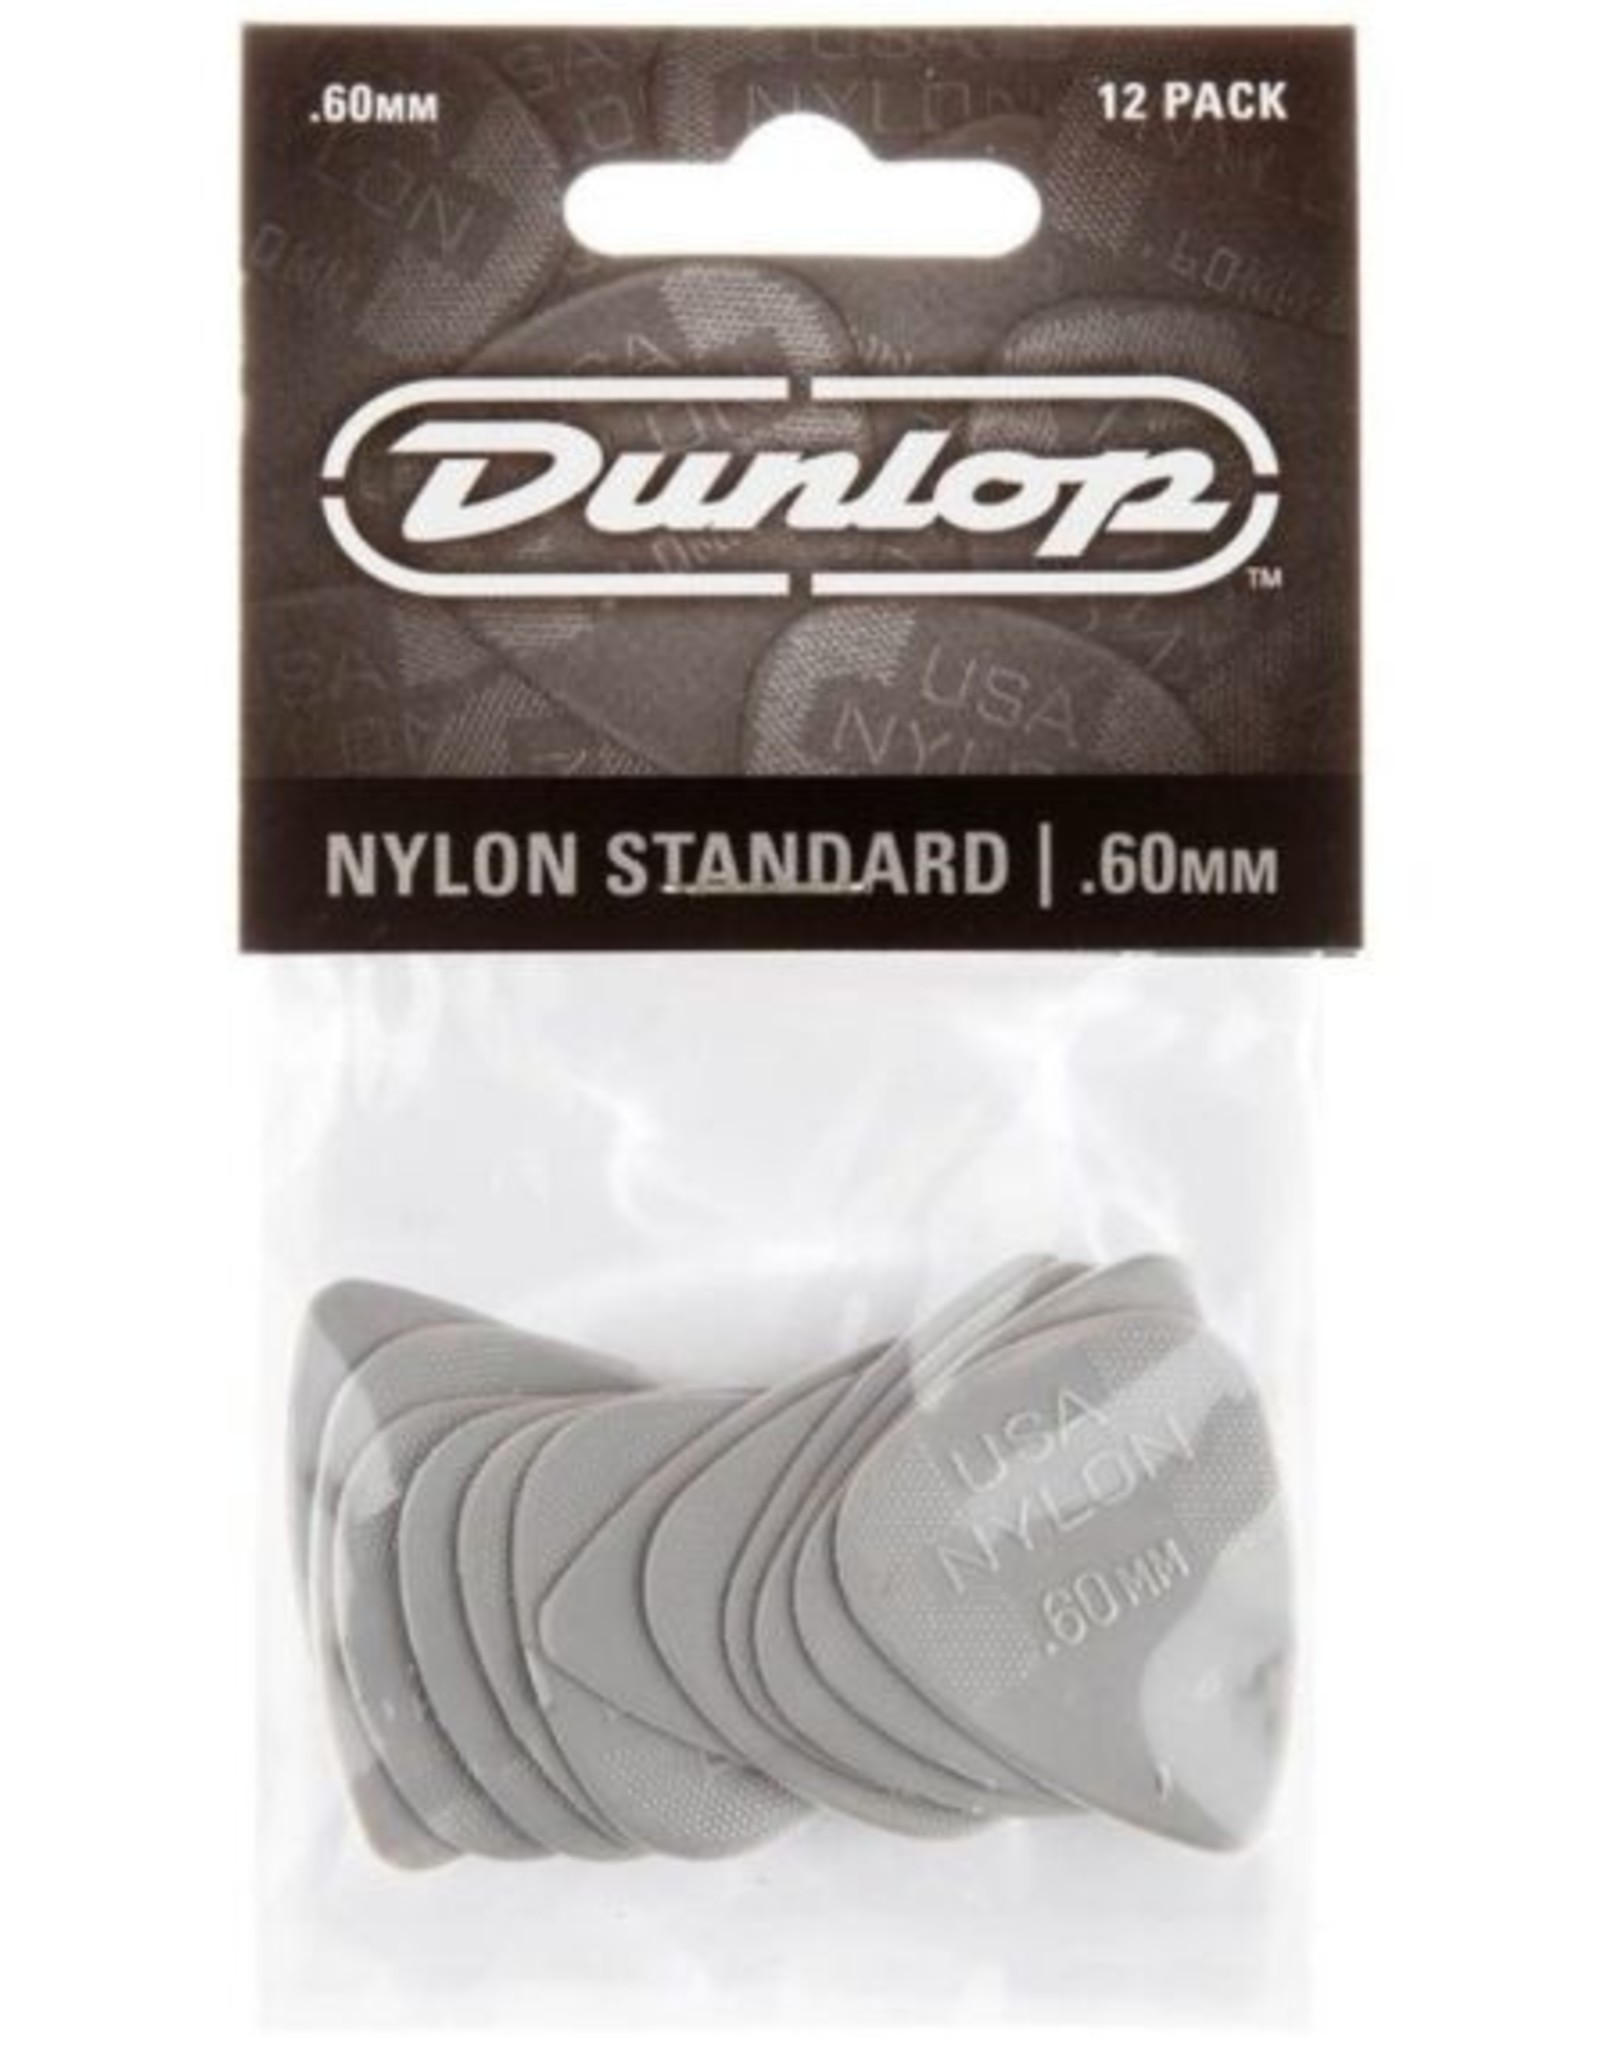 Dunlop Dunlop Nylon Standard 60mm Player Pack